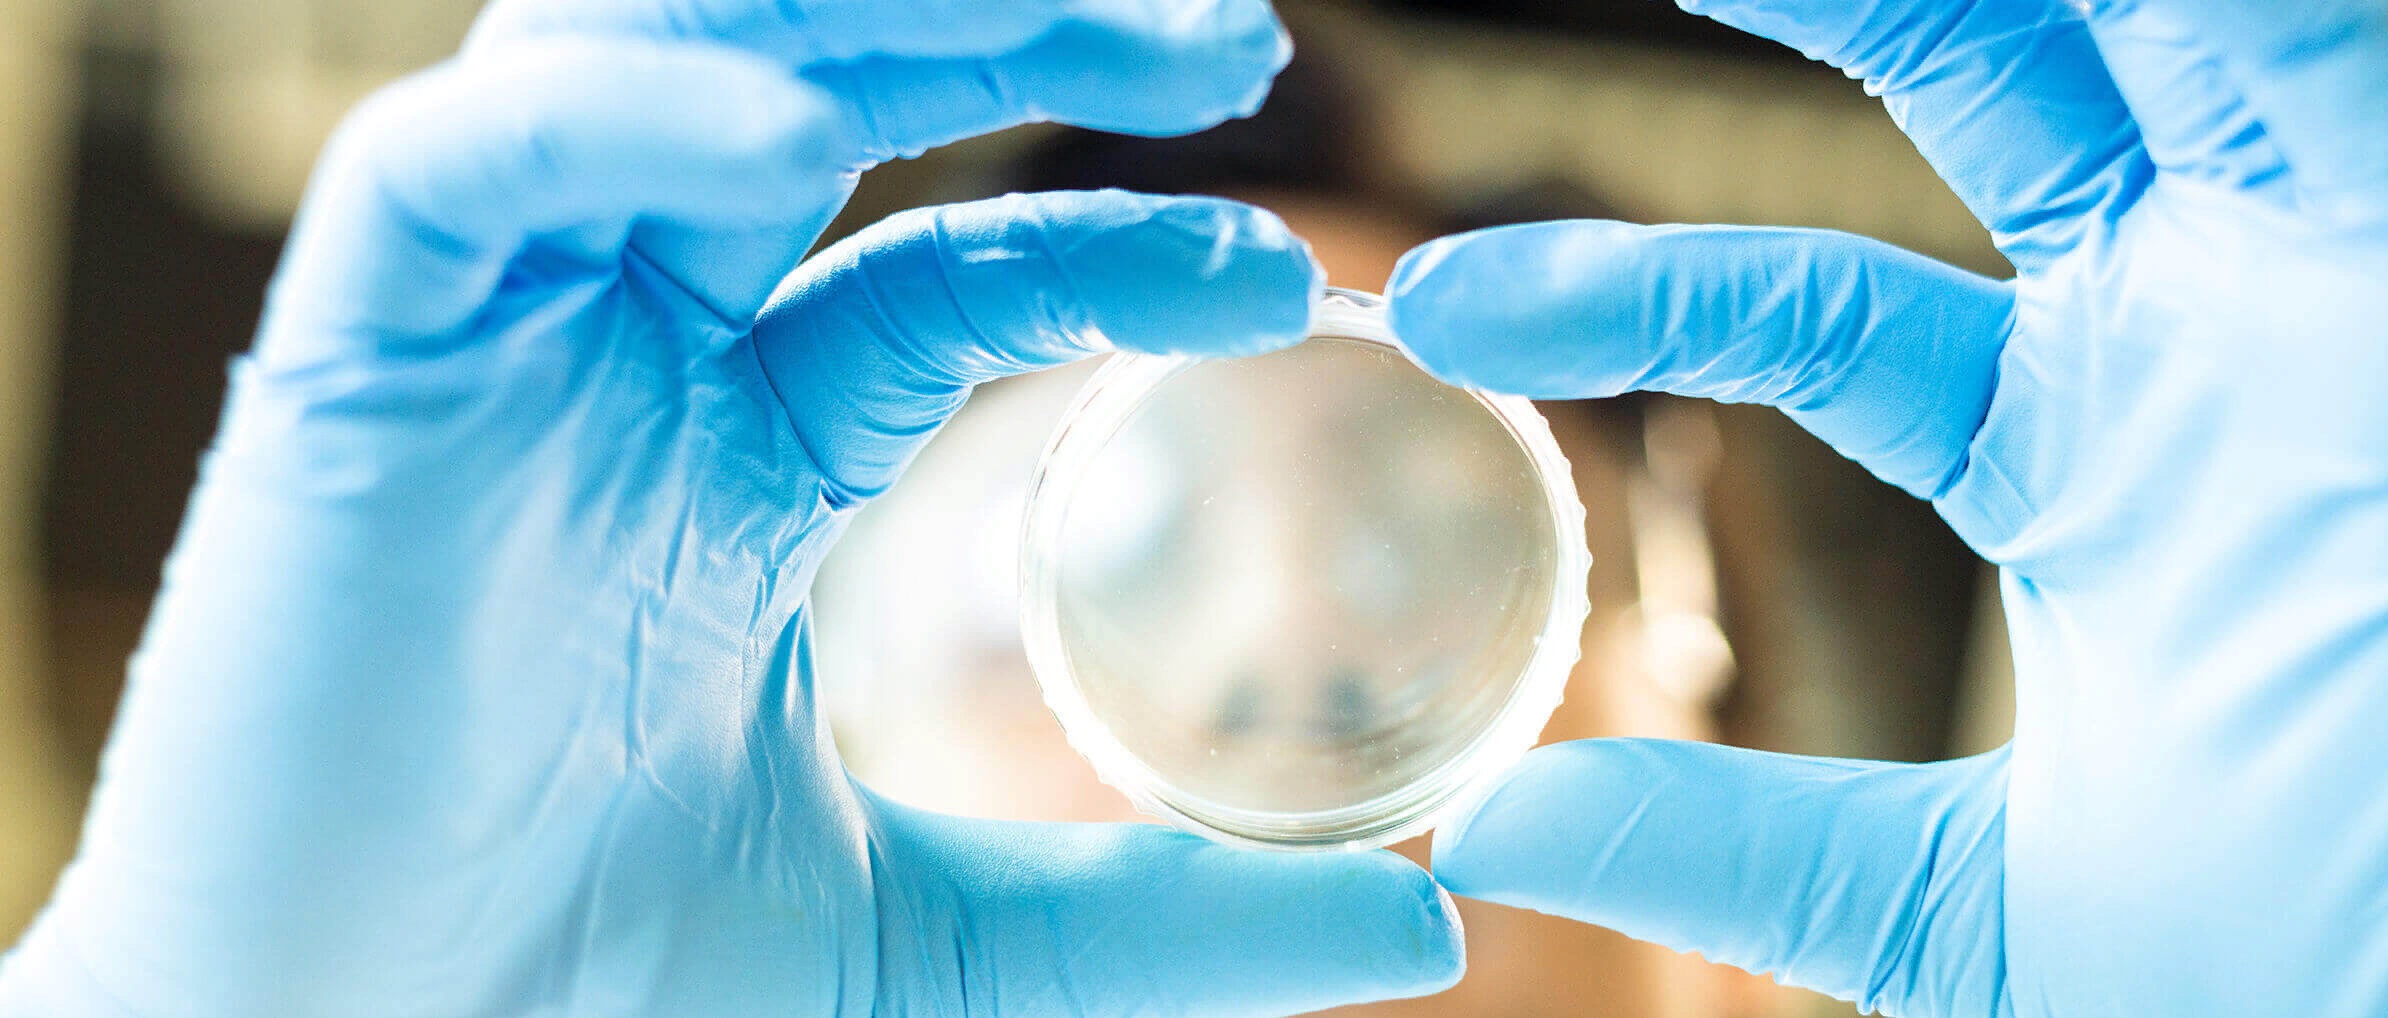 база доноров яйцеклеток с фото